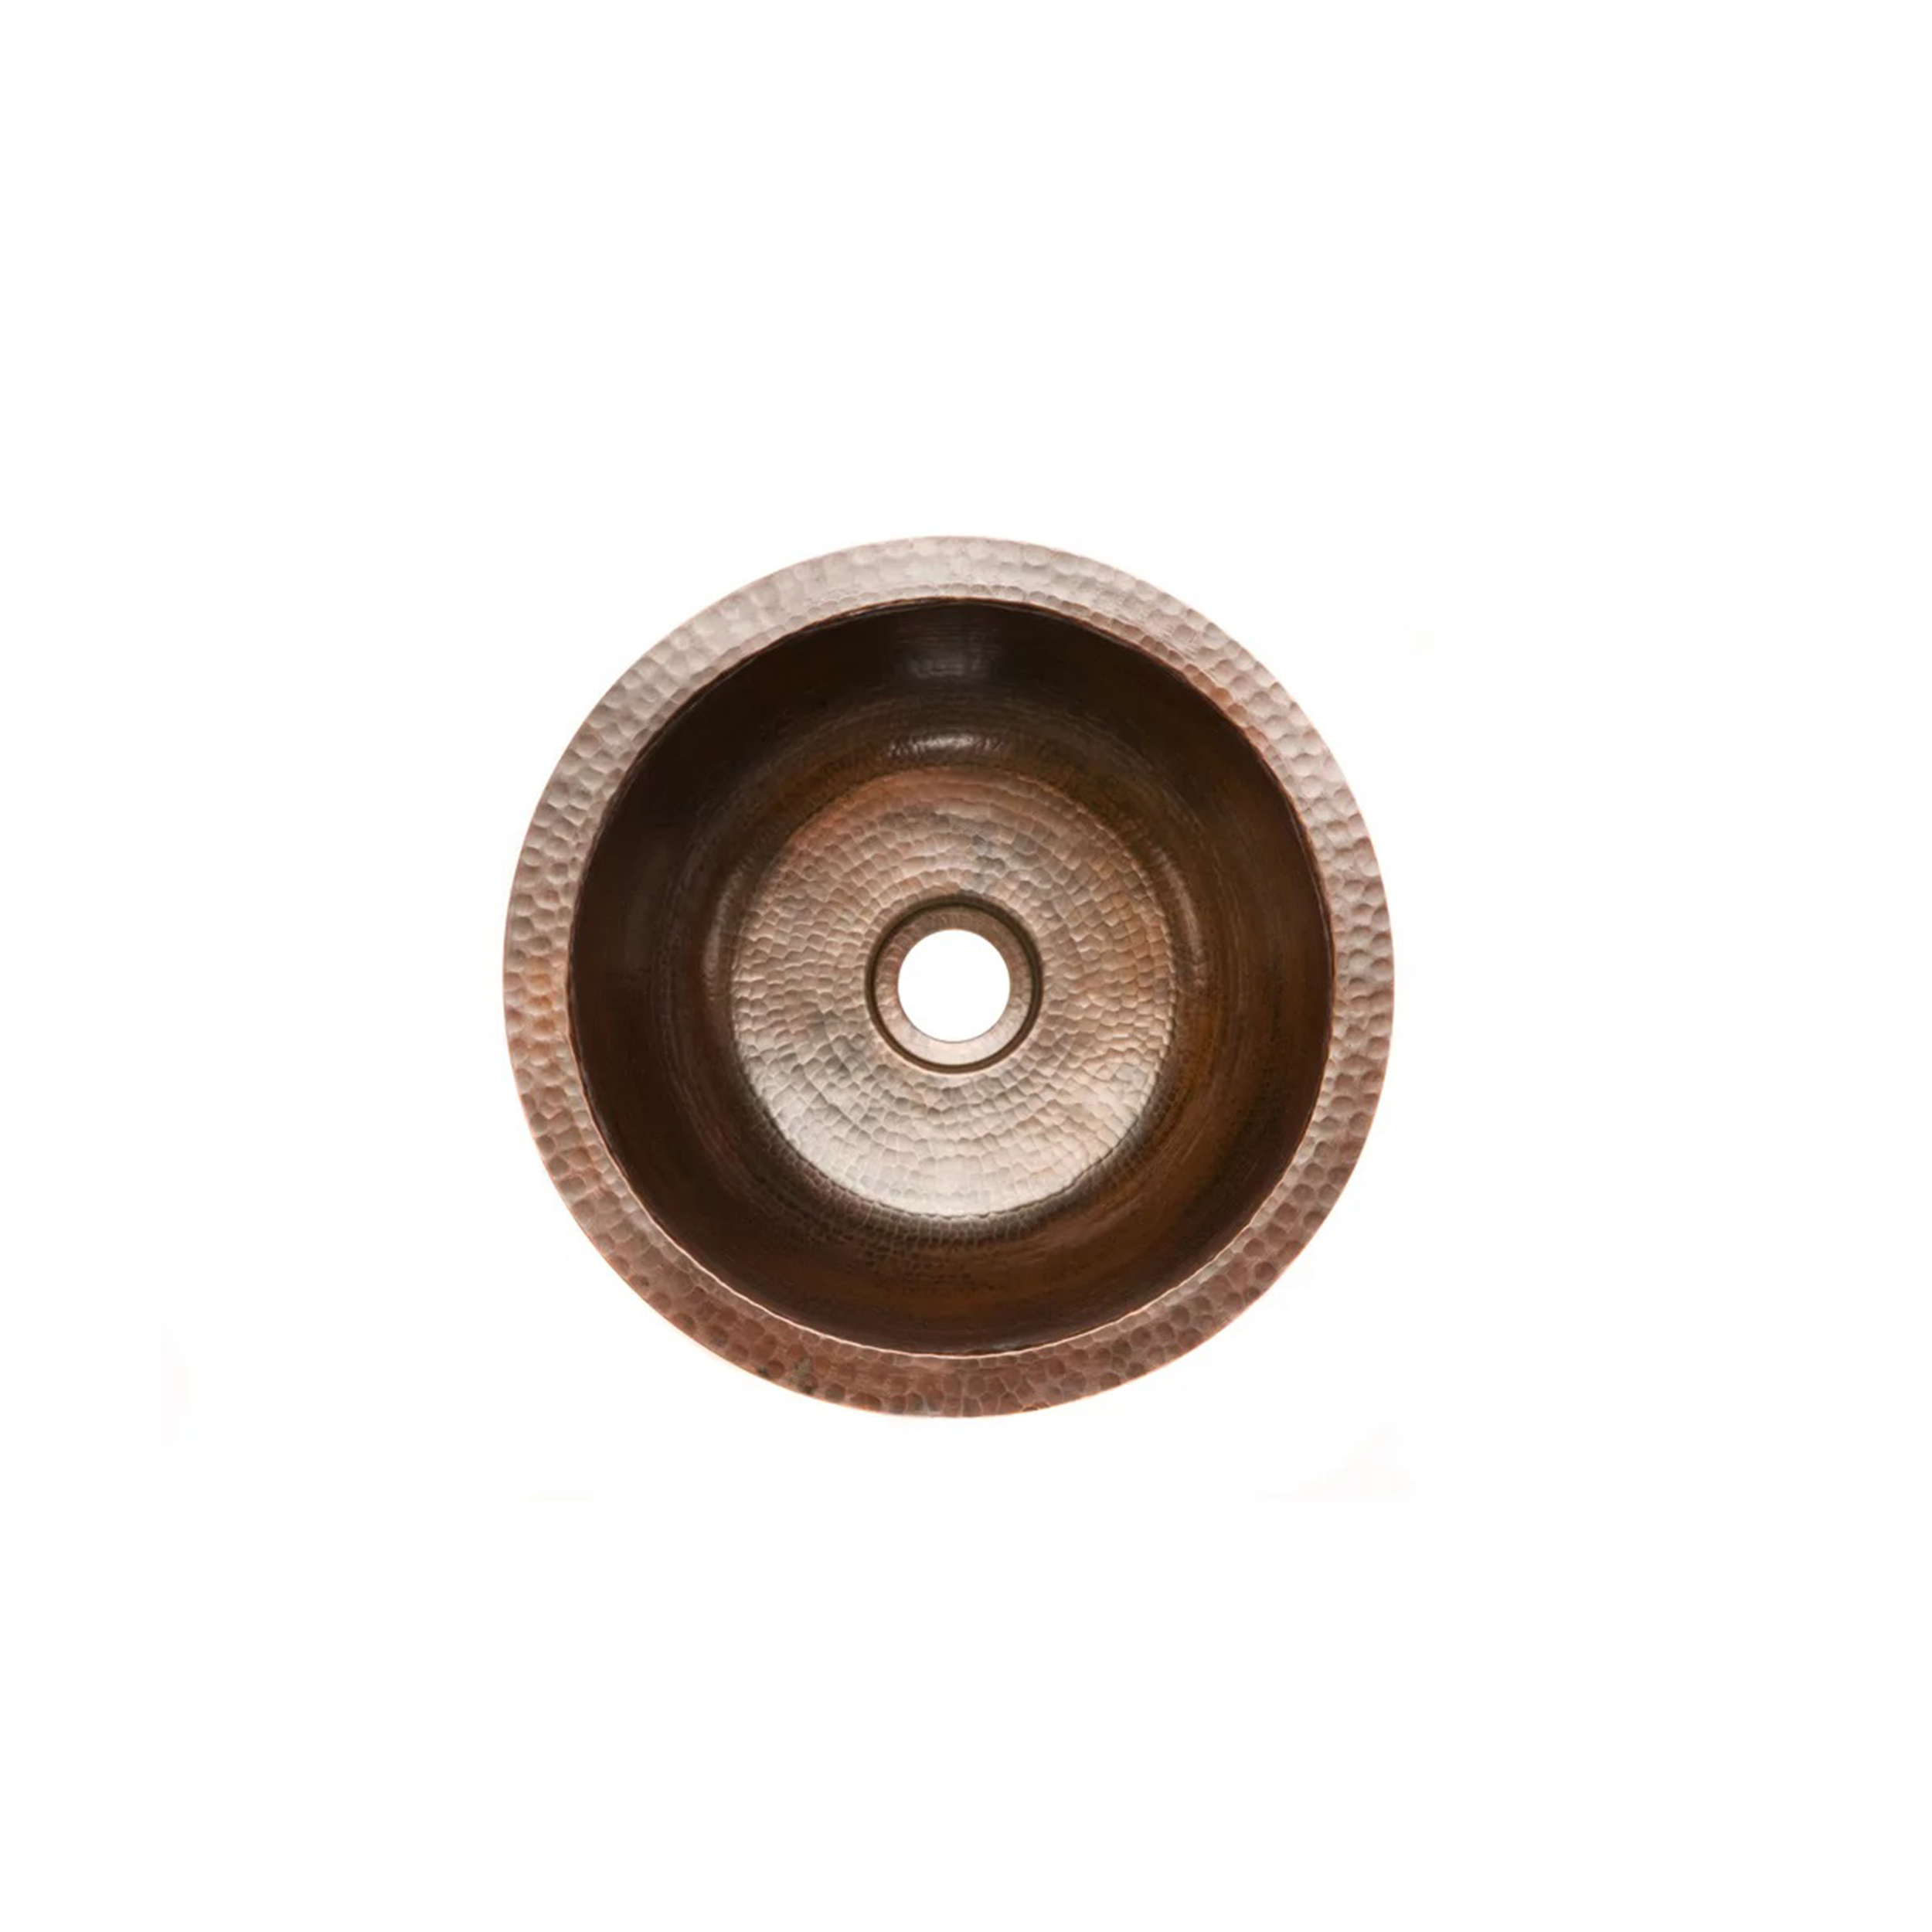 14" Round Hammered Copper Bar Sink W/ 2" Drain Size